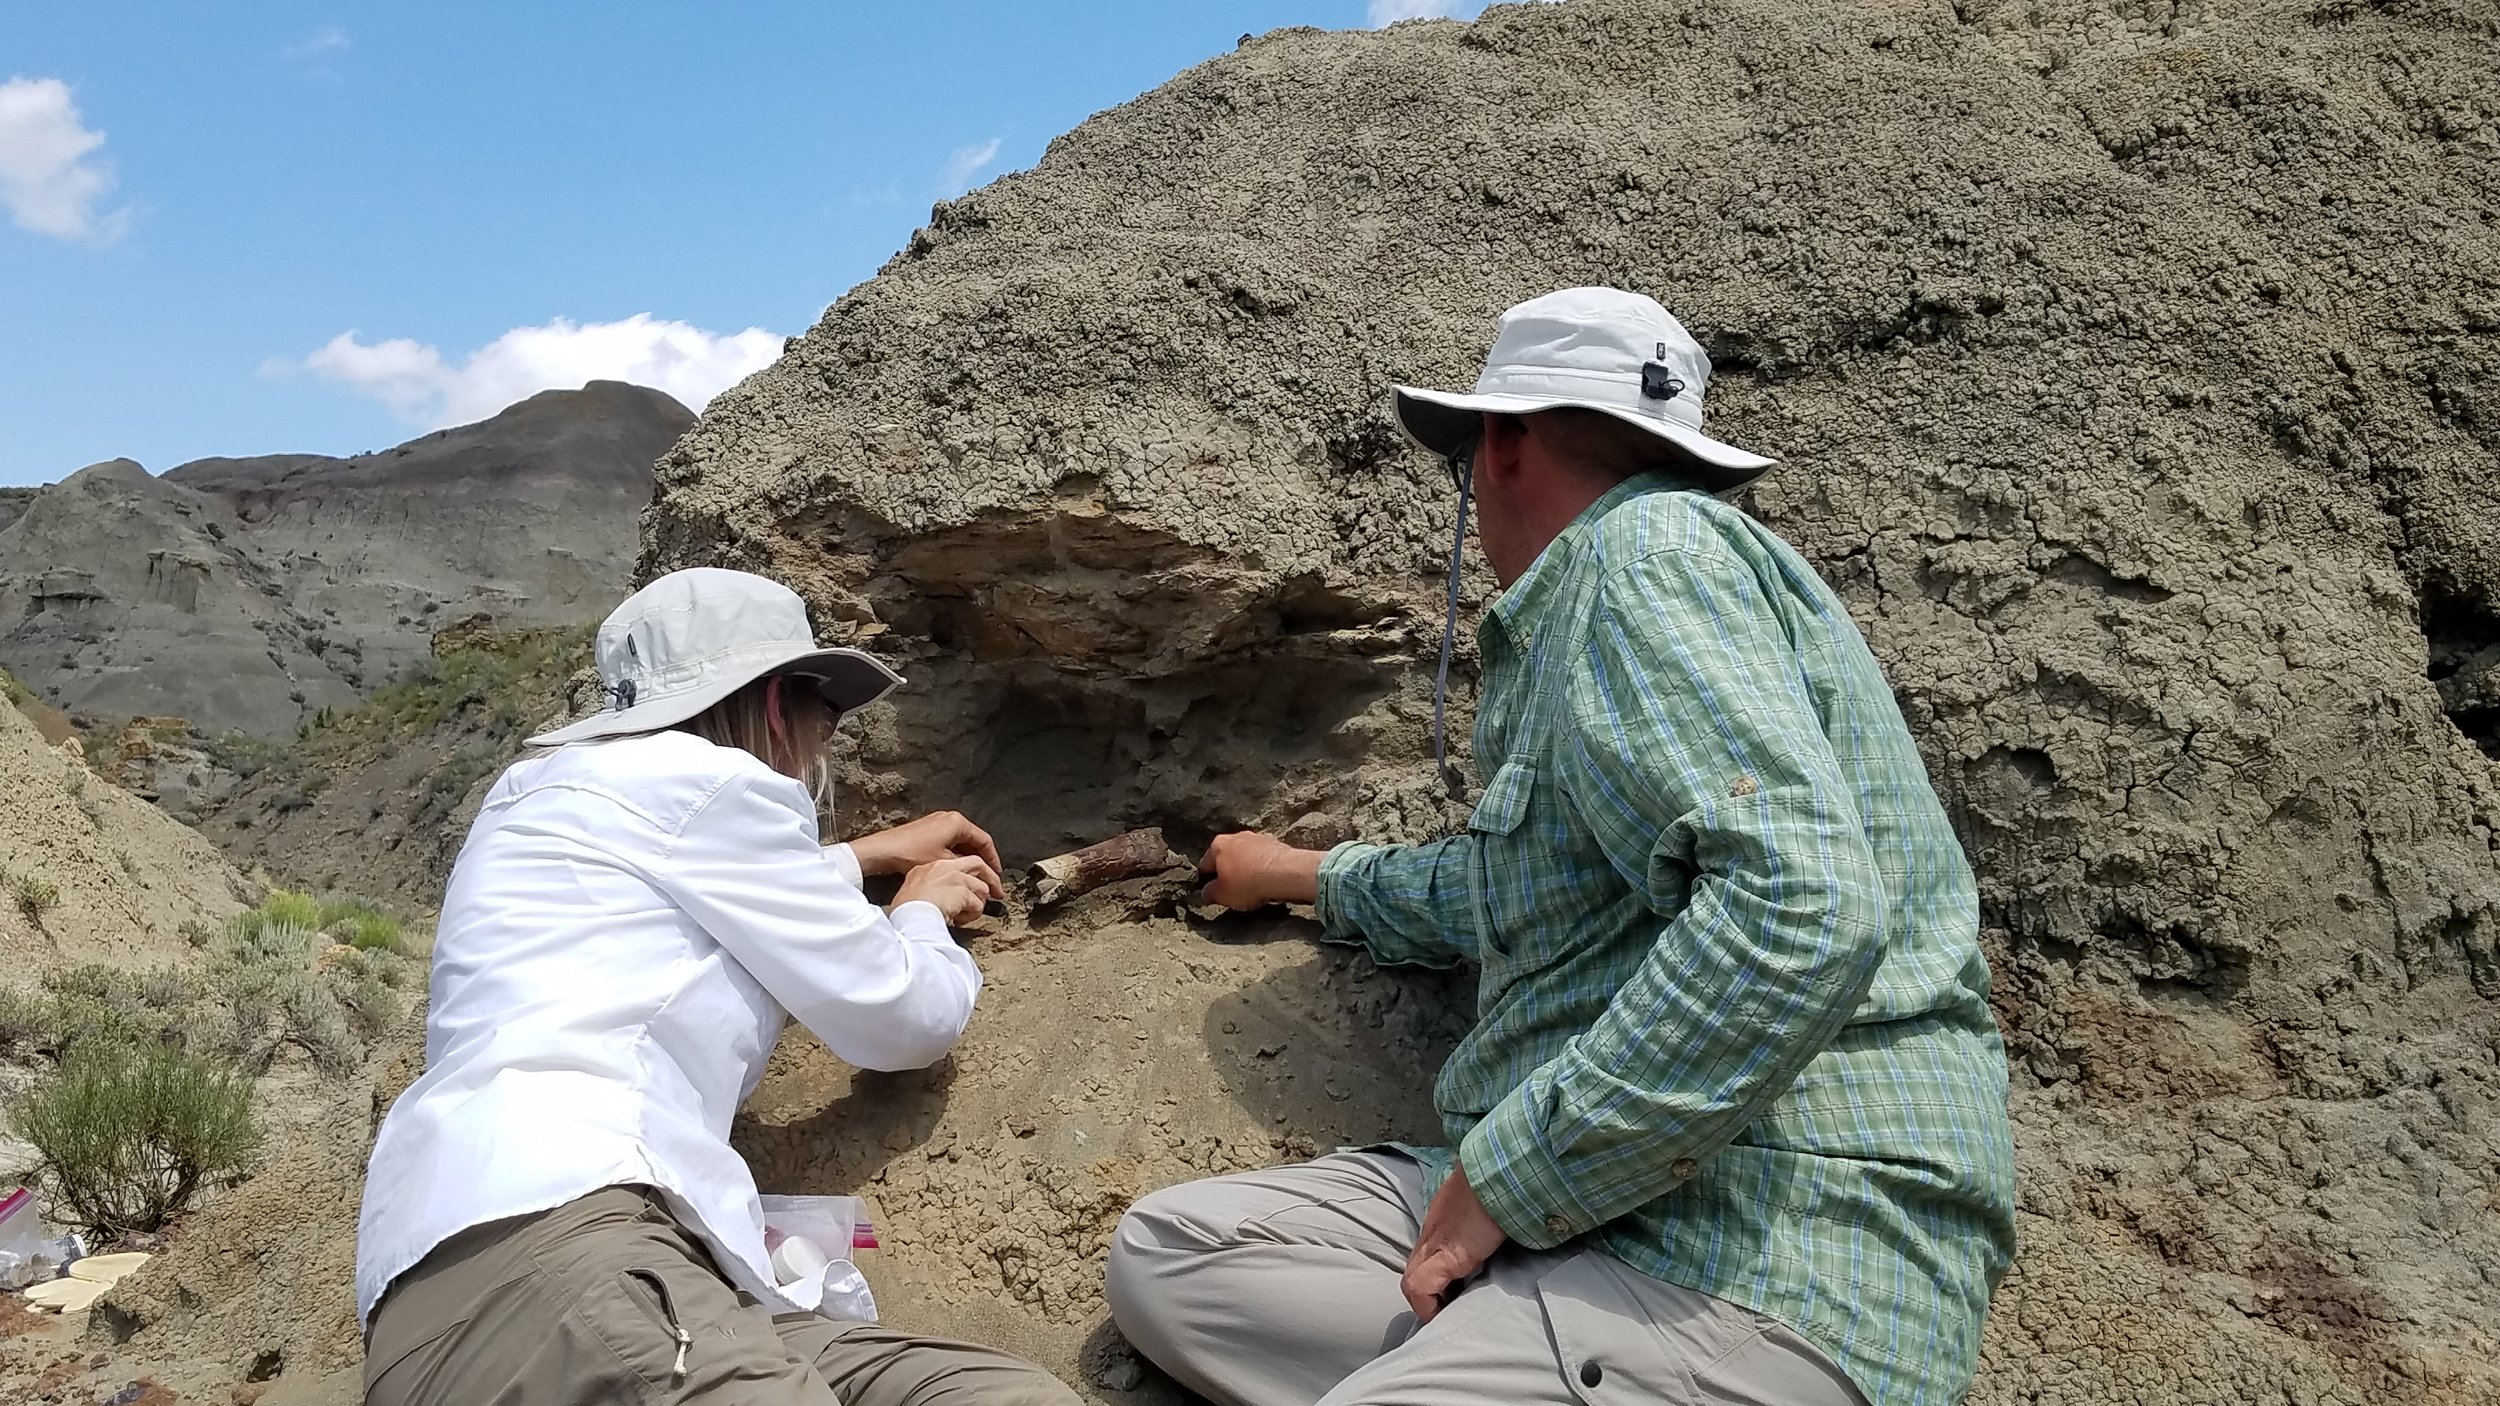 Digging up Dinosaur Fossils